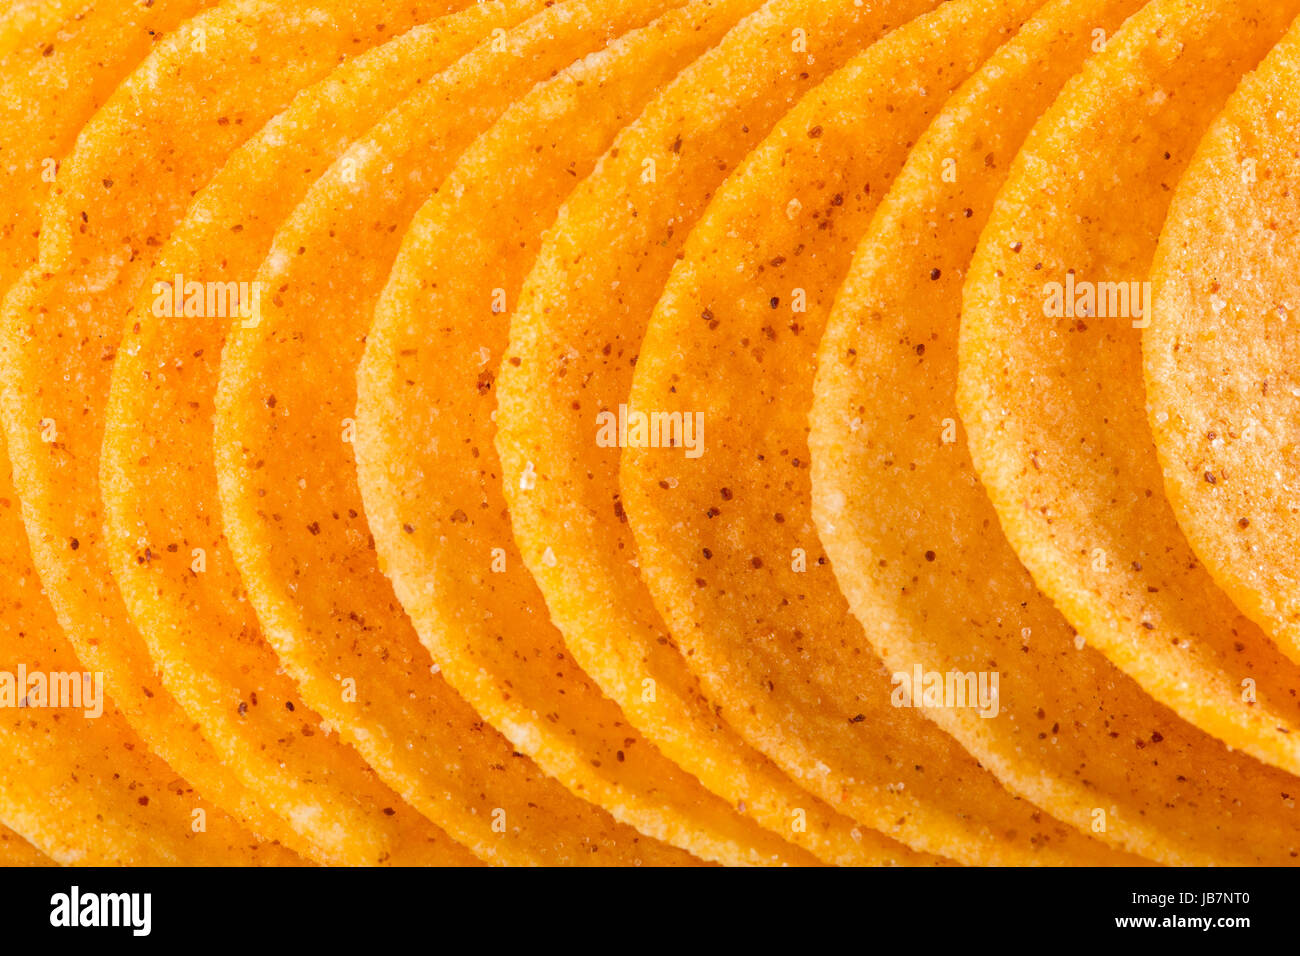 Makro Aufnahme von Kartoffelchips Foto Stock